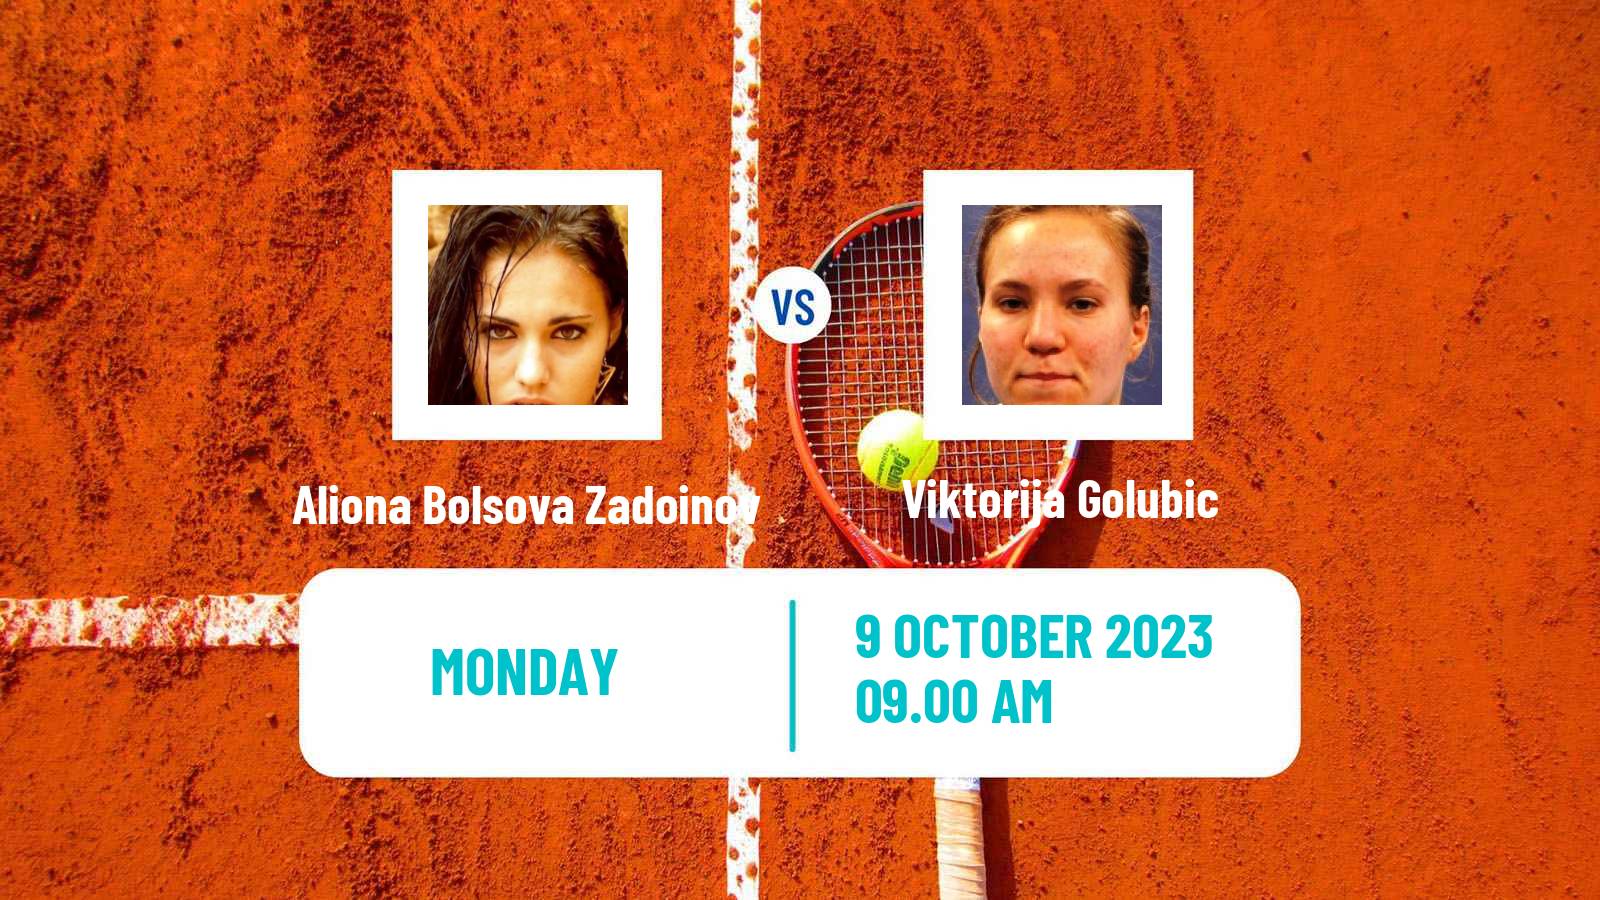 Tennis Rouen Challenger Women Aliona Bolsova Zadoinov - Viktorija Golubic